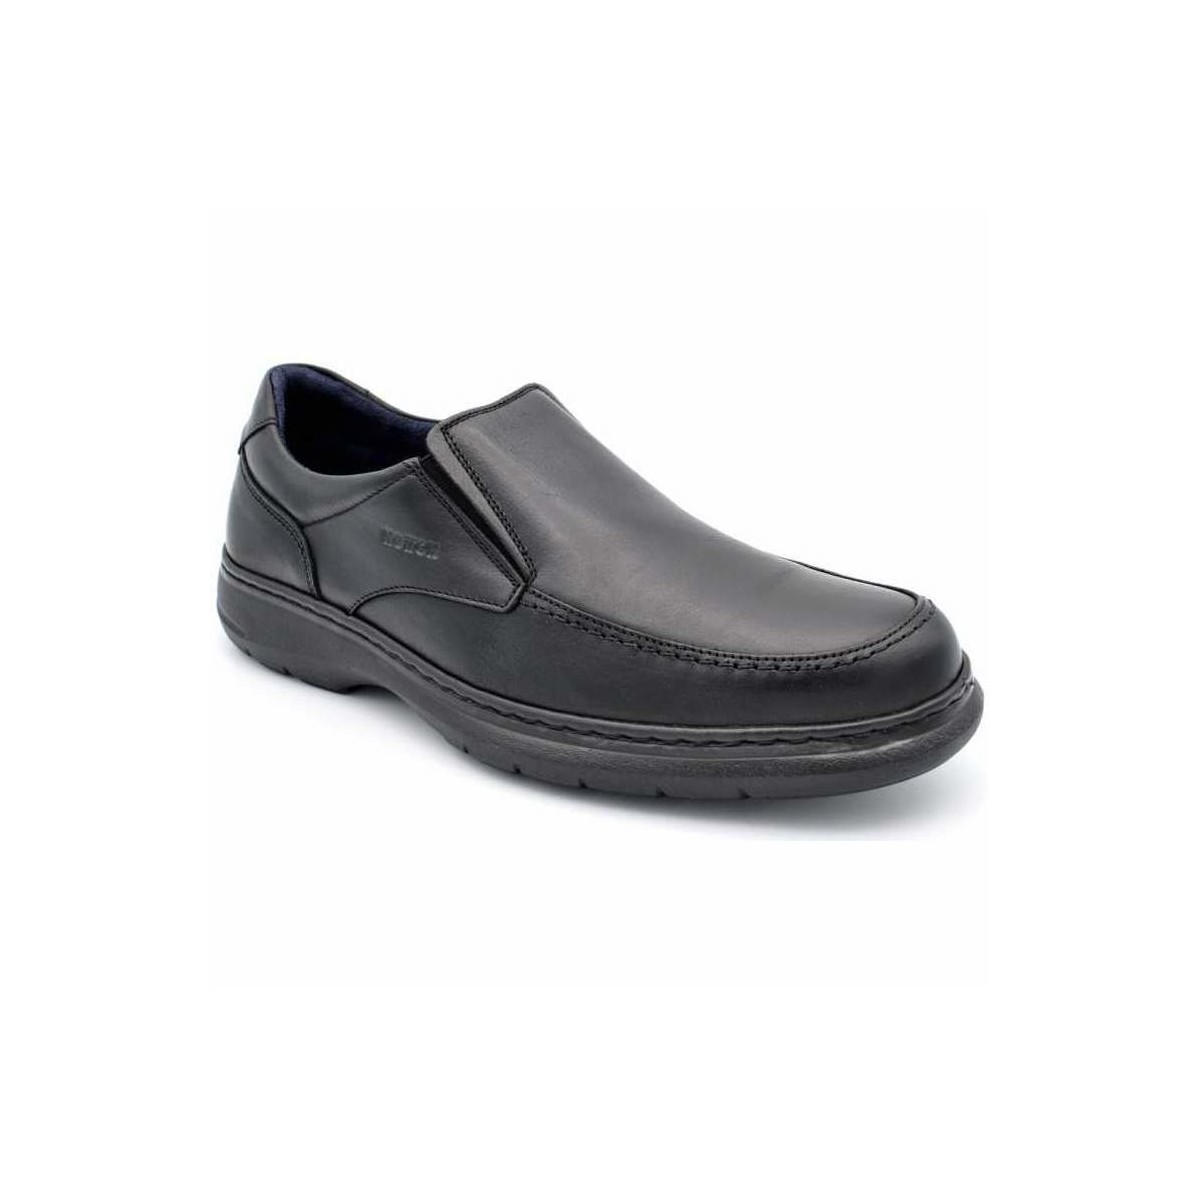 Chaussures Homme Mocassins Notton 303 Noir